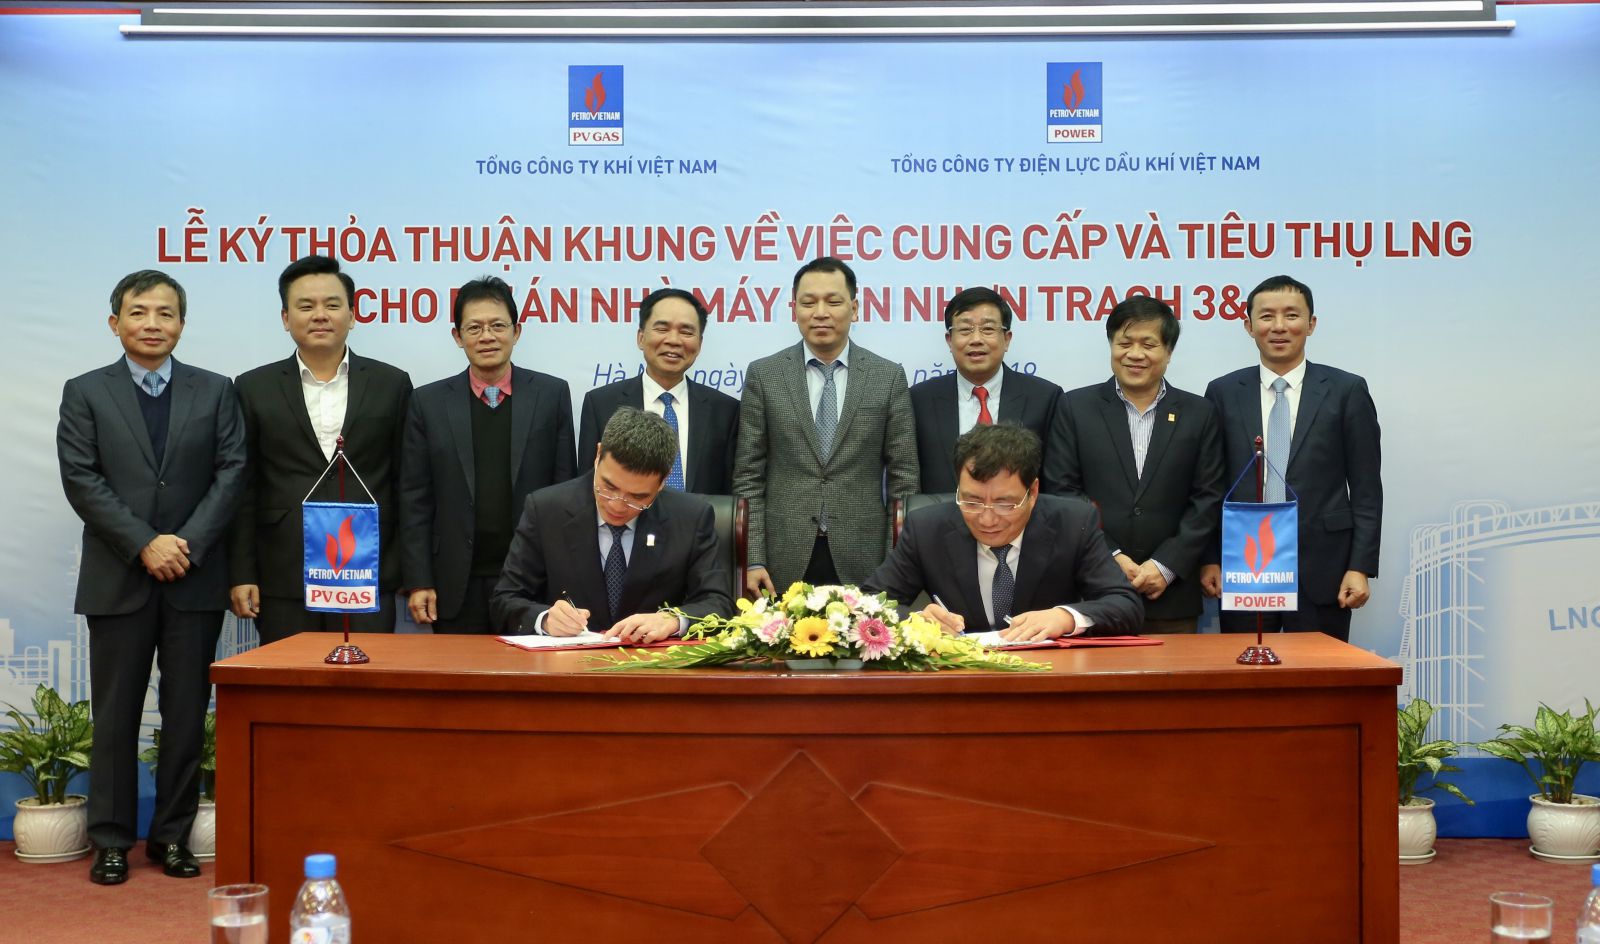 Đại diện PVGAS và PVPower ký kết thỏa thuận khung về việc cung cấp và tiêu thụ LNG cho Nhà máy điện Nhơn Trạch 3&4